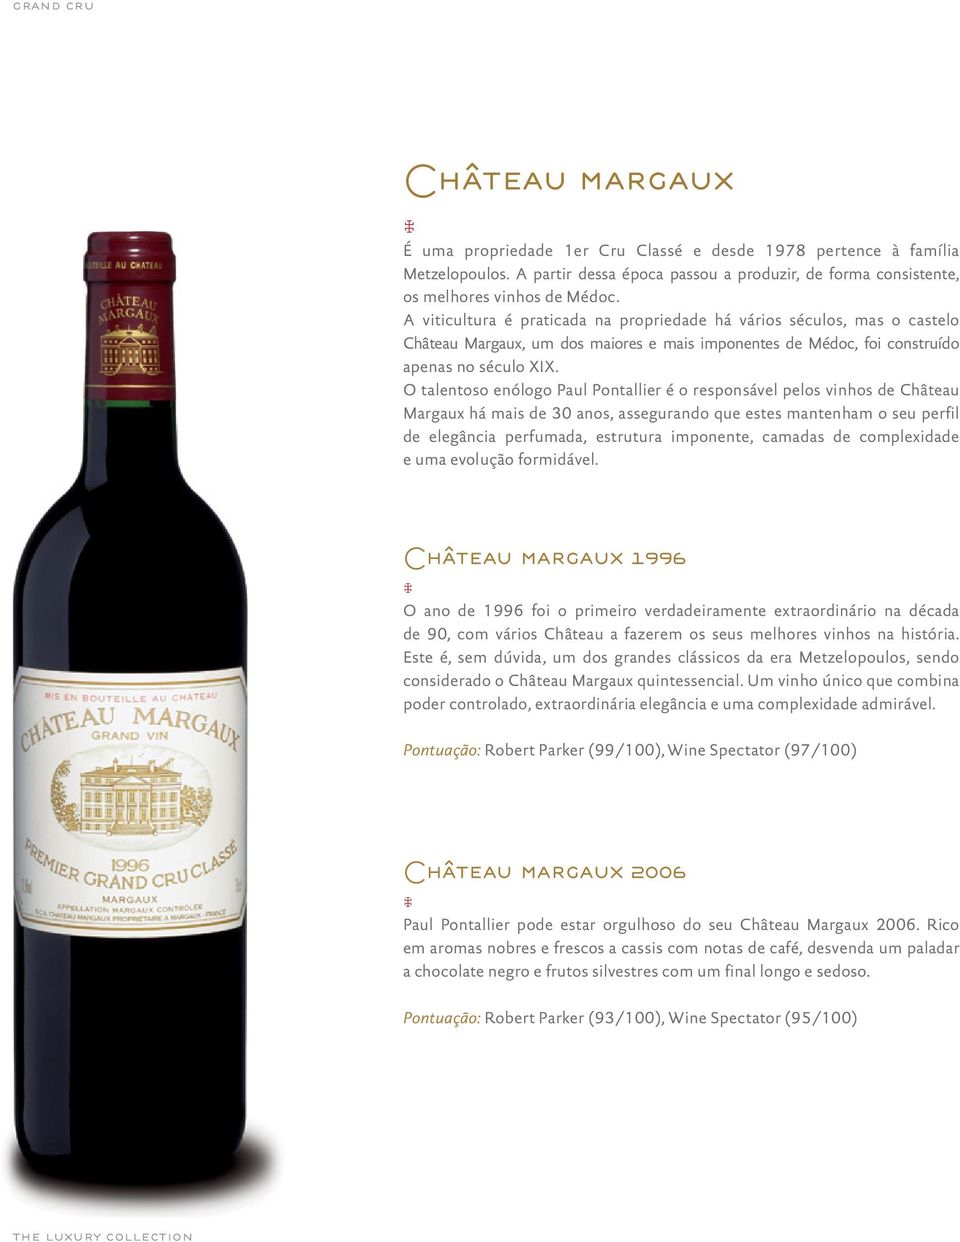 O talentoso enólogo Paul Pontallier é o responsável pelos vinhos de Château Margaux há mais de 30 anos, assegurando que estes mantenham o seu perfil de elegância perfumada, estrutura imponente,